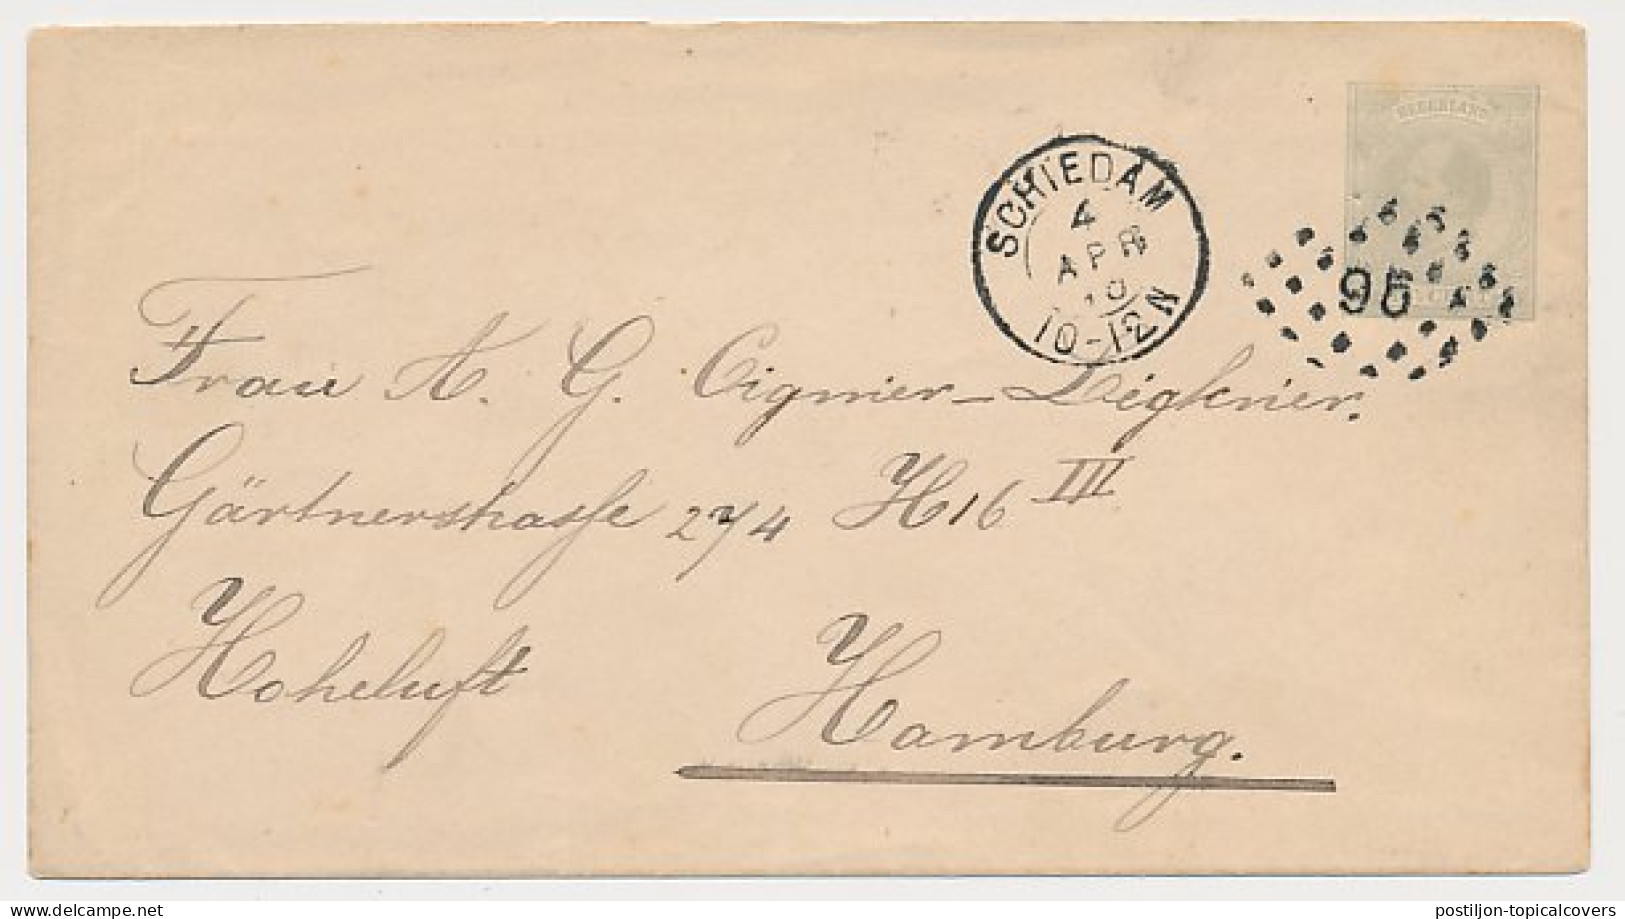 Envelop G. 2 Schiedam - Duitsland 1893 - Ganzsachen